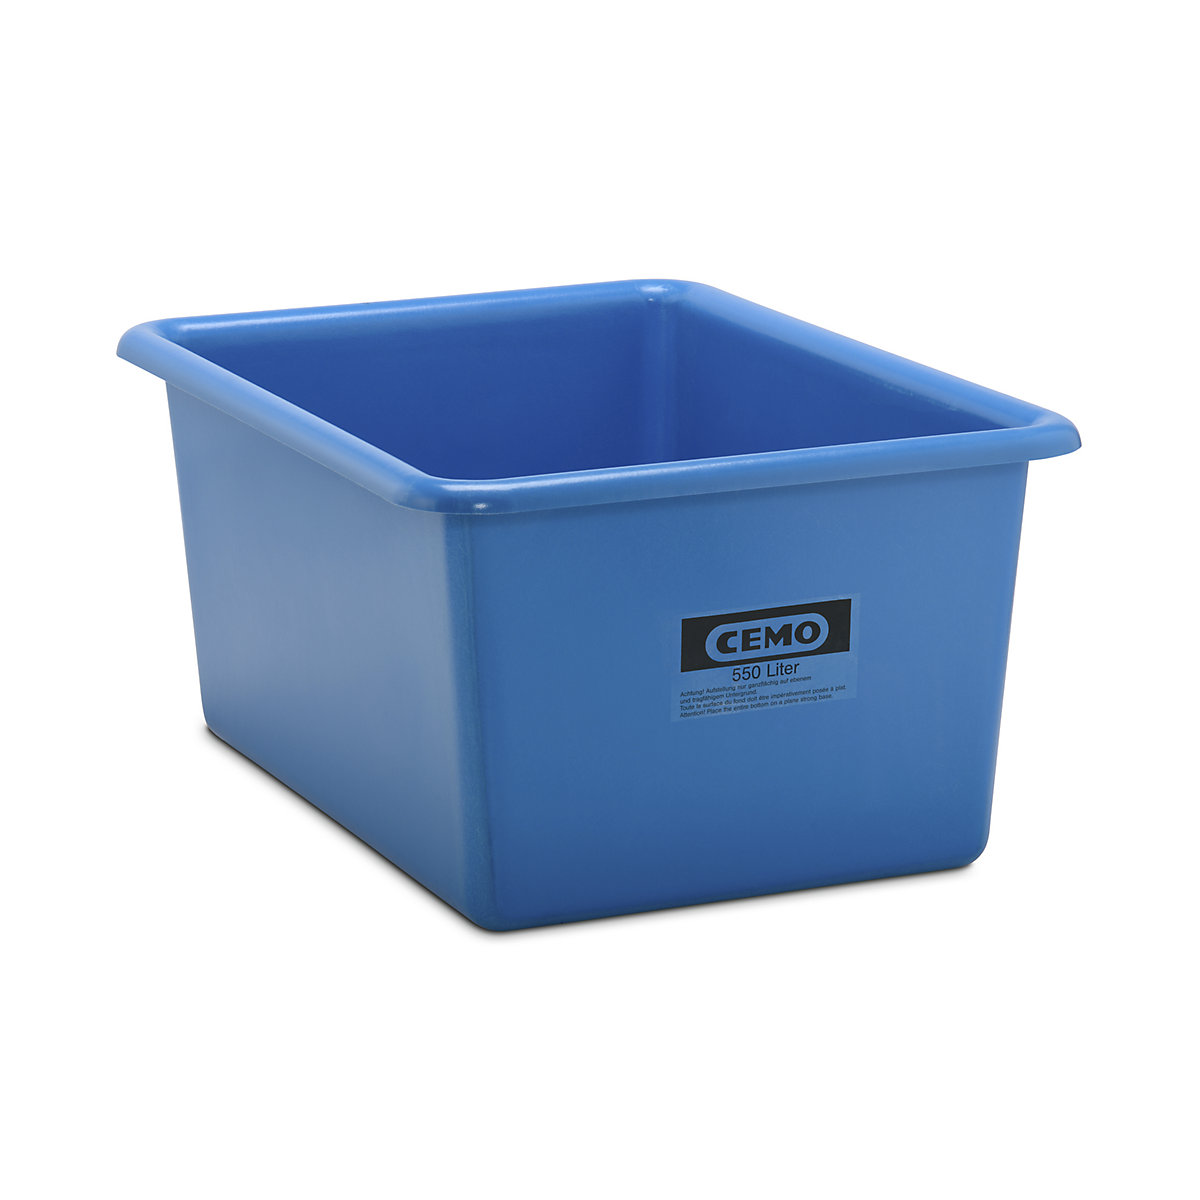 Großbehälter aus GfK CEMO, Inhalt 550 l, LxBxH 1320 x 970 x 620 mm, blau